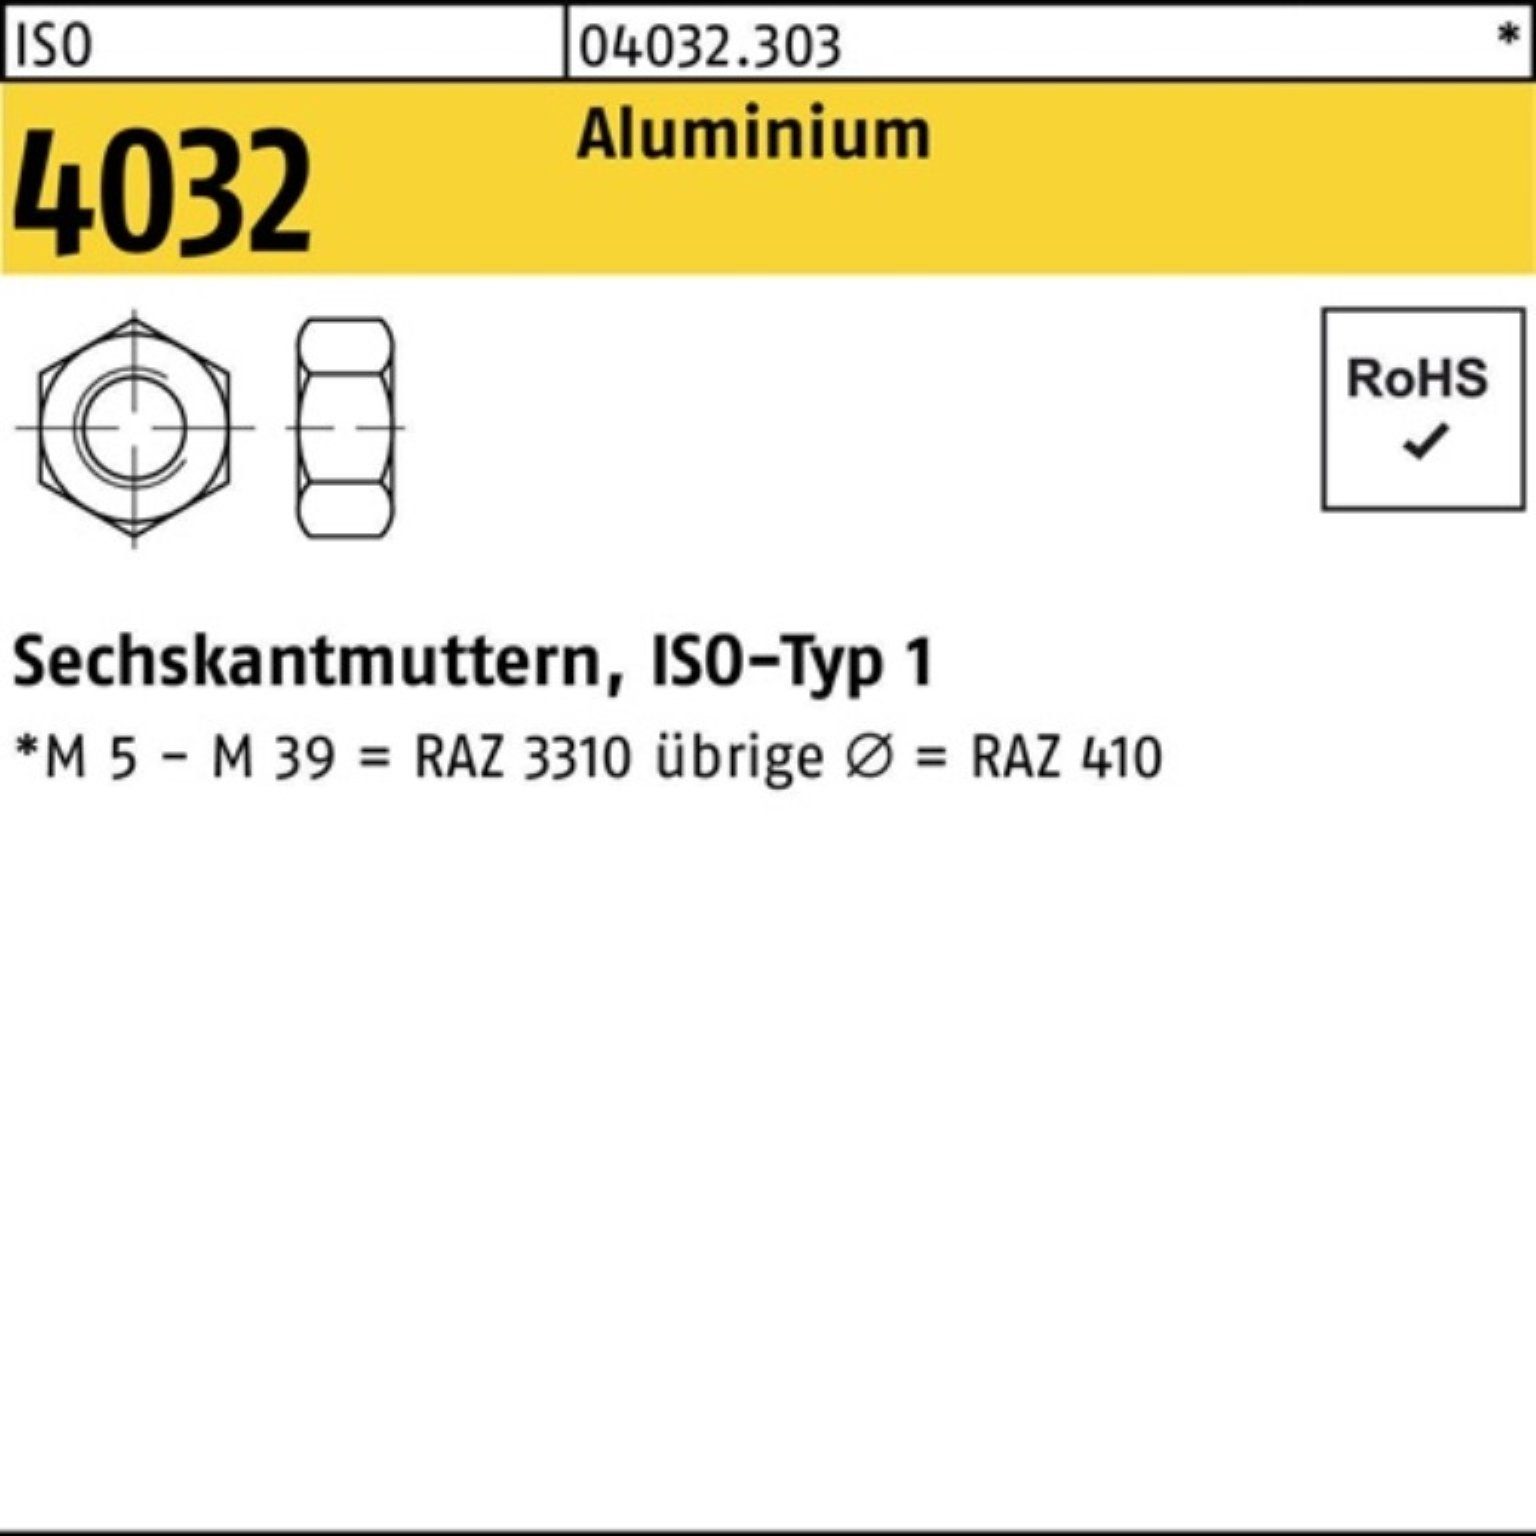 ISO 4032 Stück Bufab Sechskantmutter Aluminium 100 Muttern 4032 100er ISO A M4 Pack